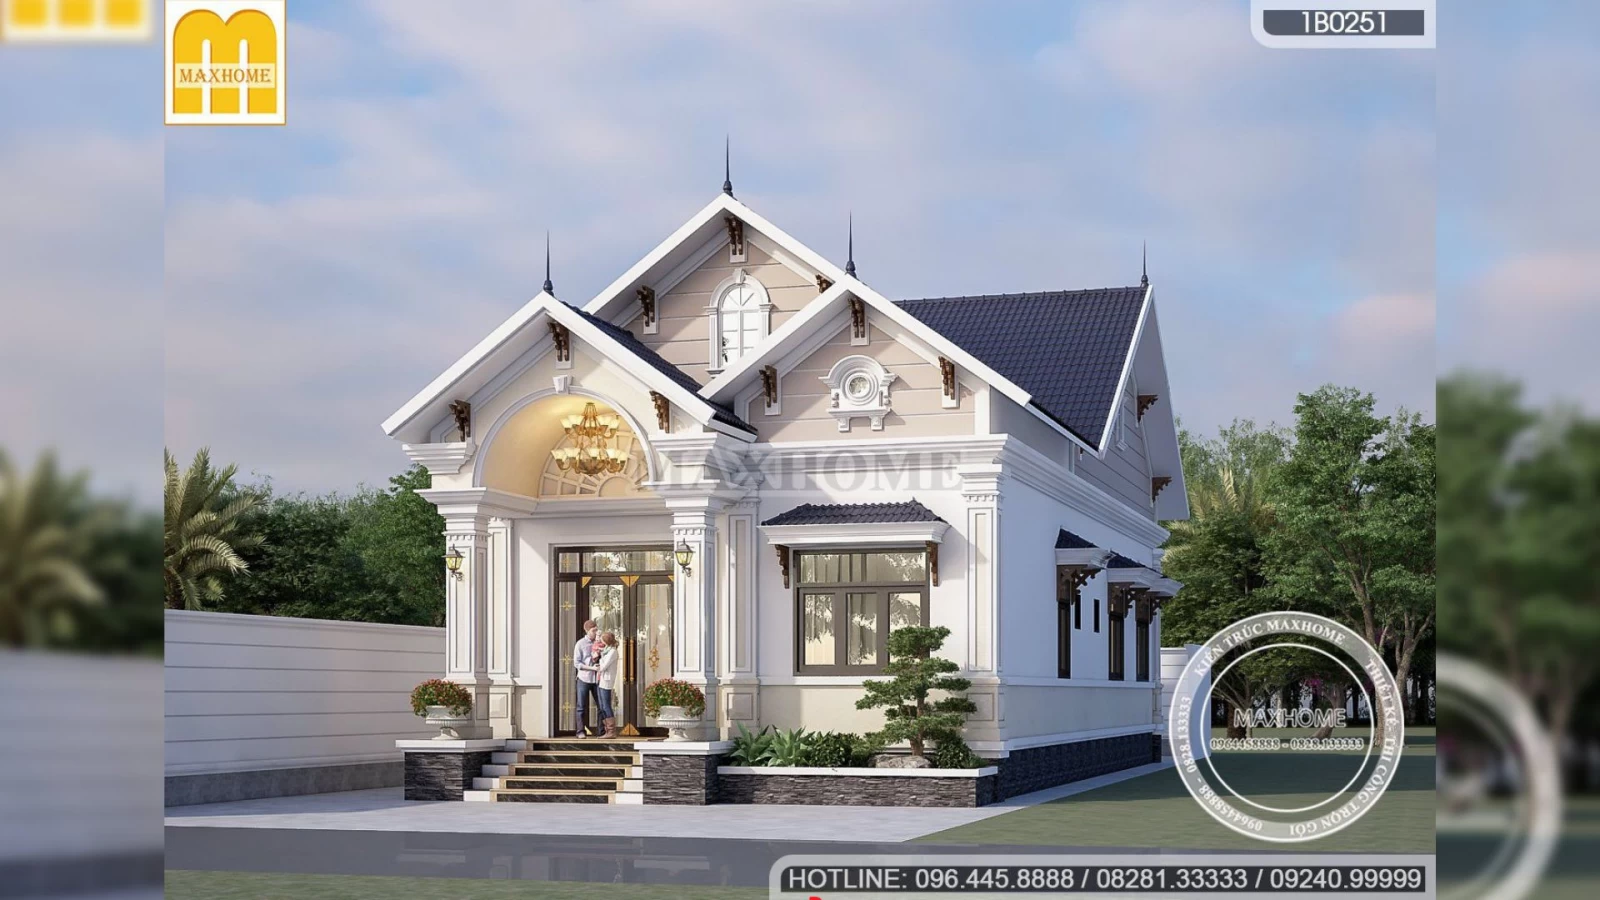 Mẫu nhà 1 tầng mái Thái tân cổ điển vừa đẹp giá lại hợp lý tại Tuyên Quang | MH02975